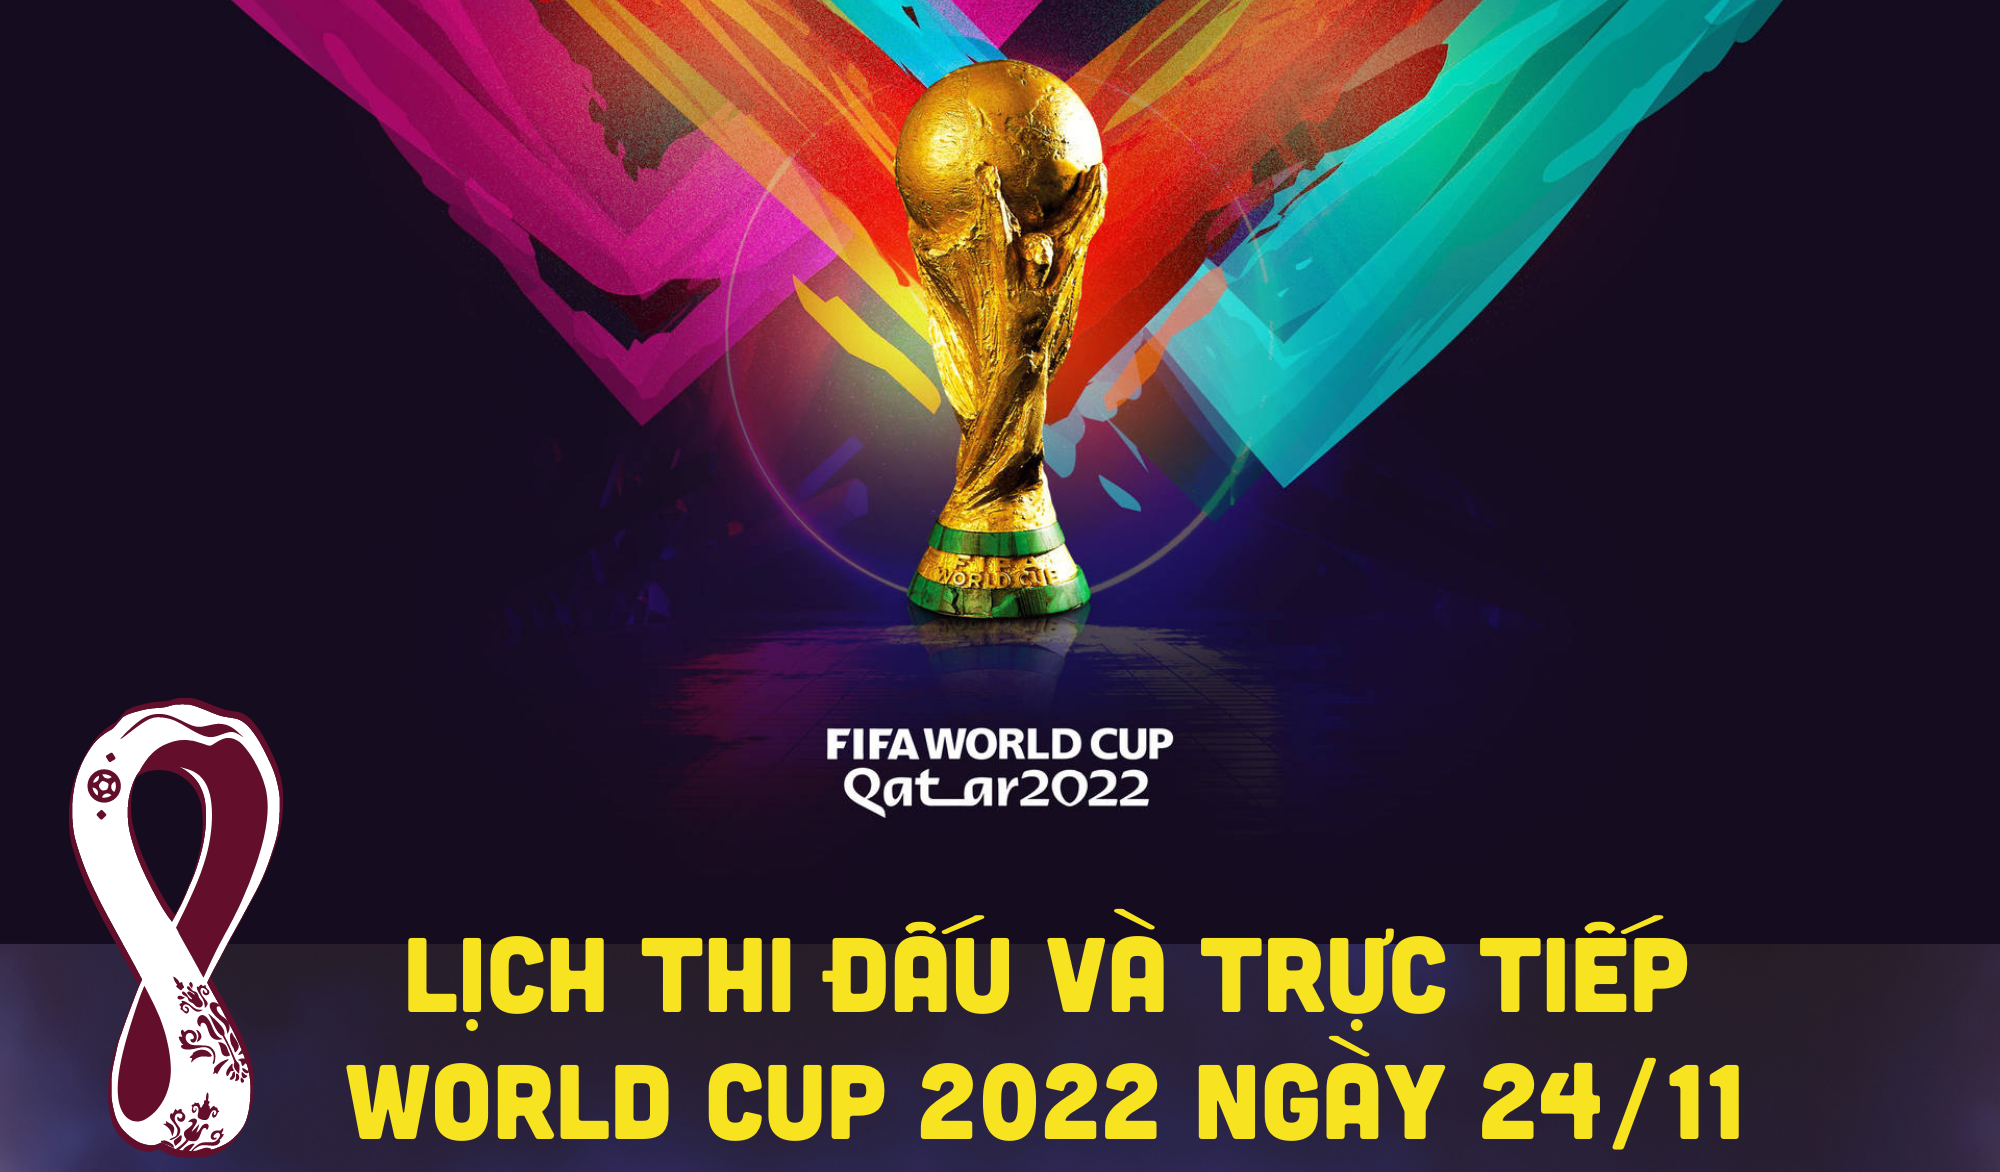 Lịch thi đấu và trực tiếp World Cup 2022 ngày 24/11